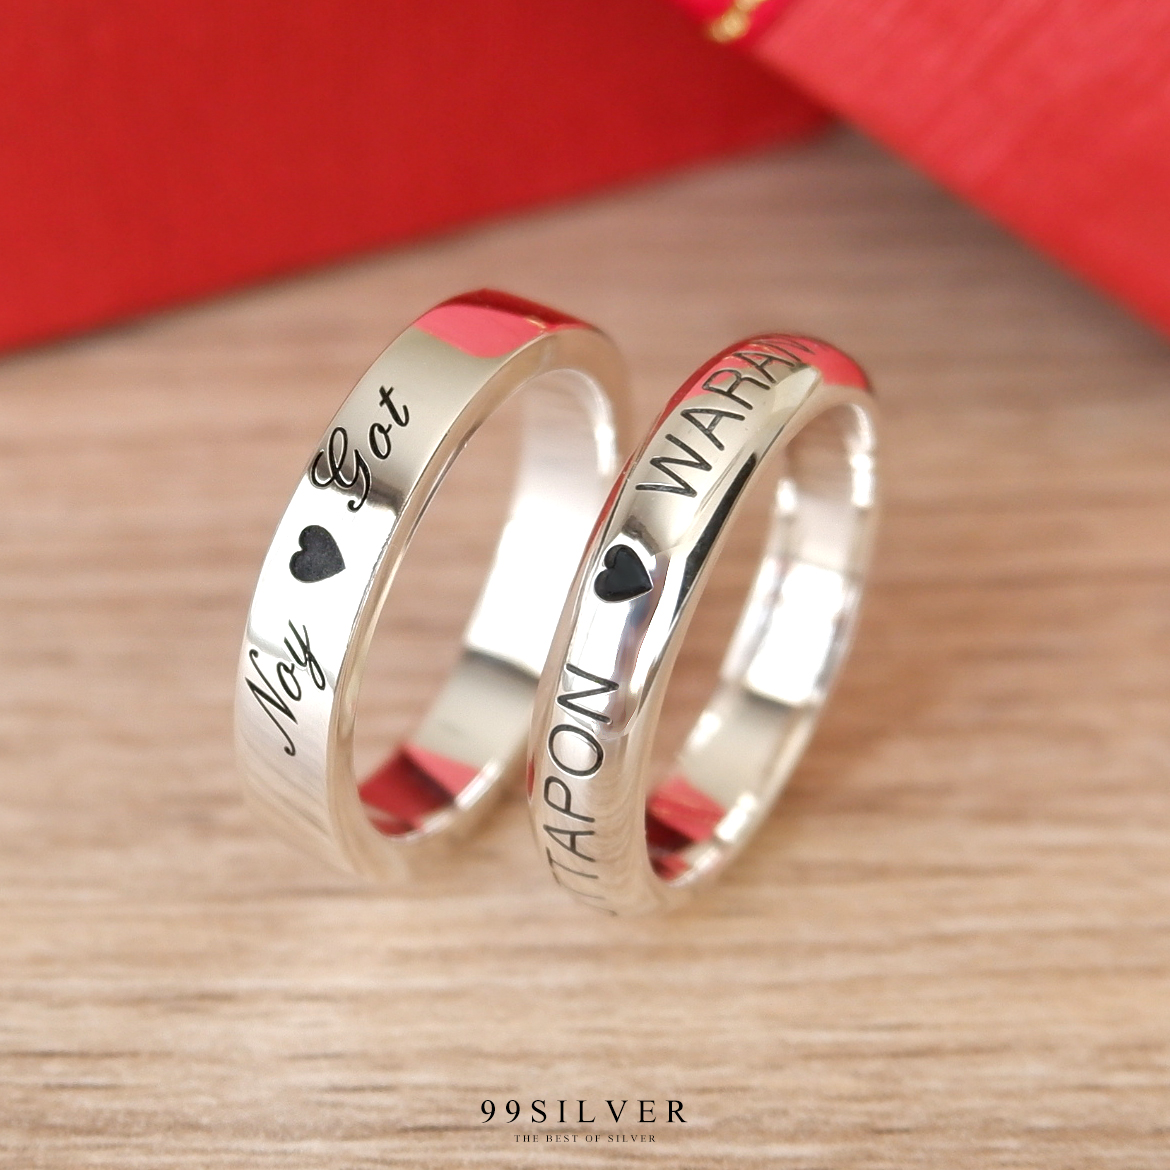 Set แหวนคู่รักสองวง เงินแท้รุ่นนิยมที่สุดหน้ากว้าง 4 มิลลิเมตร แบบเรียบและโค้งพรีเมี่ยม